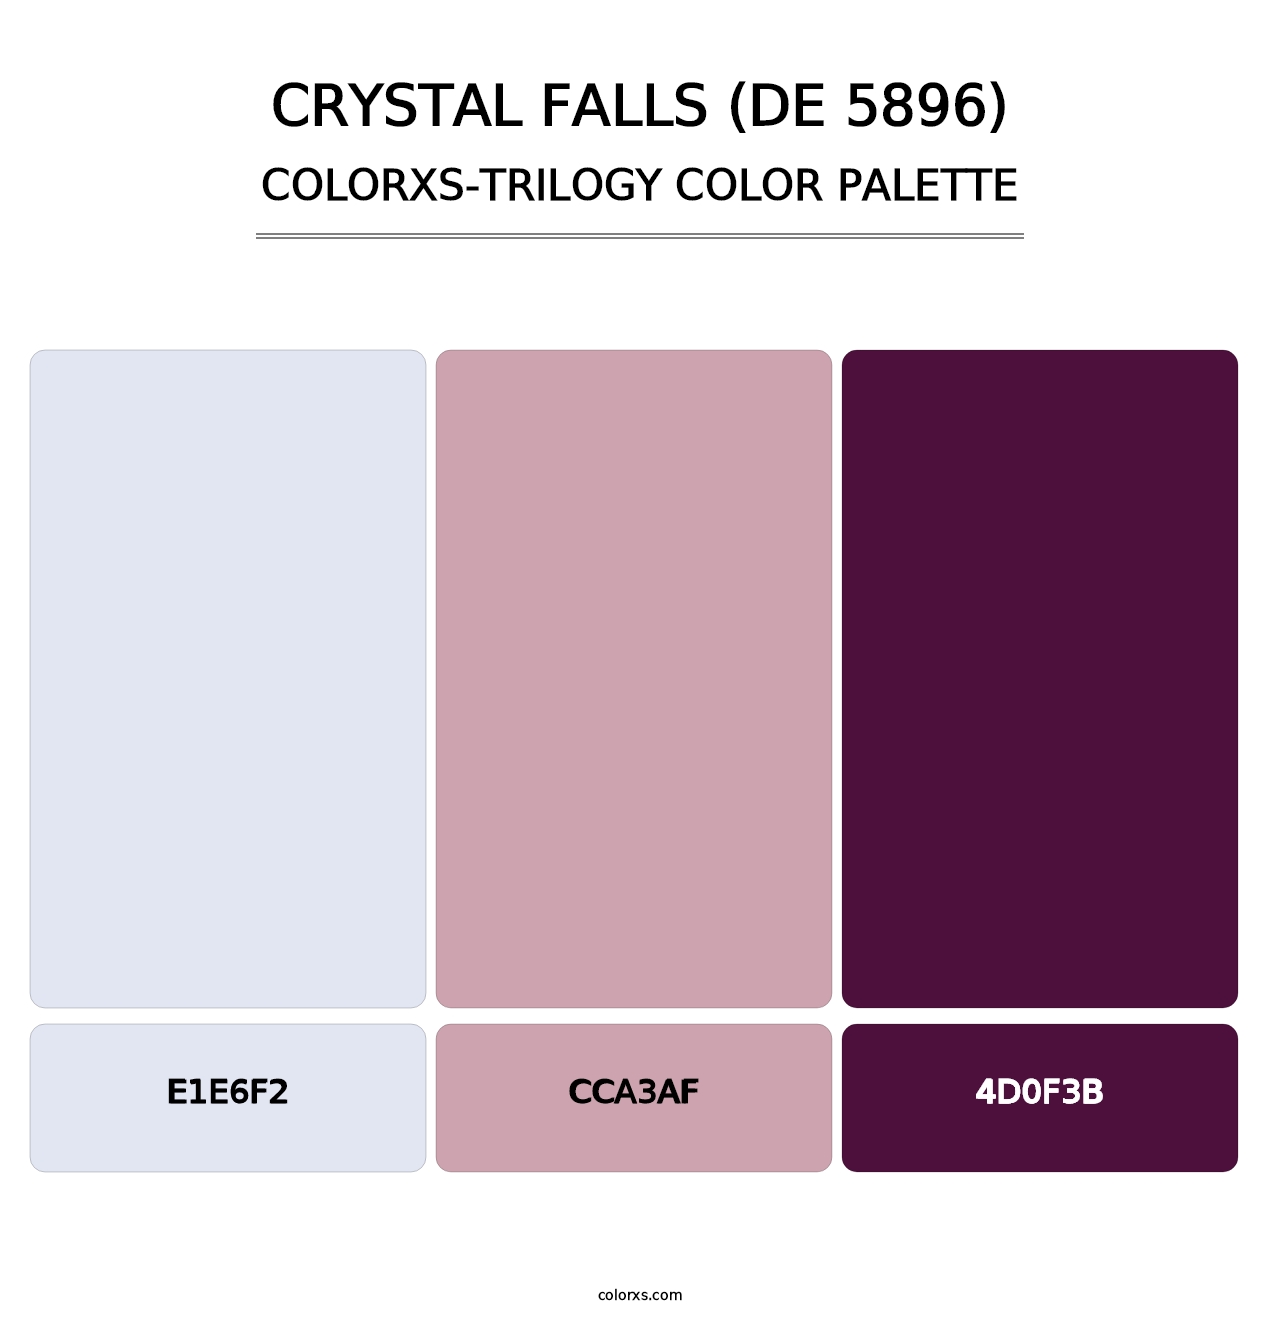 Crystal Falls (DE 5896) - Colorxs Trilogy Palette